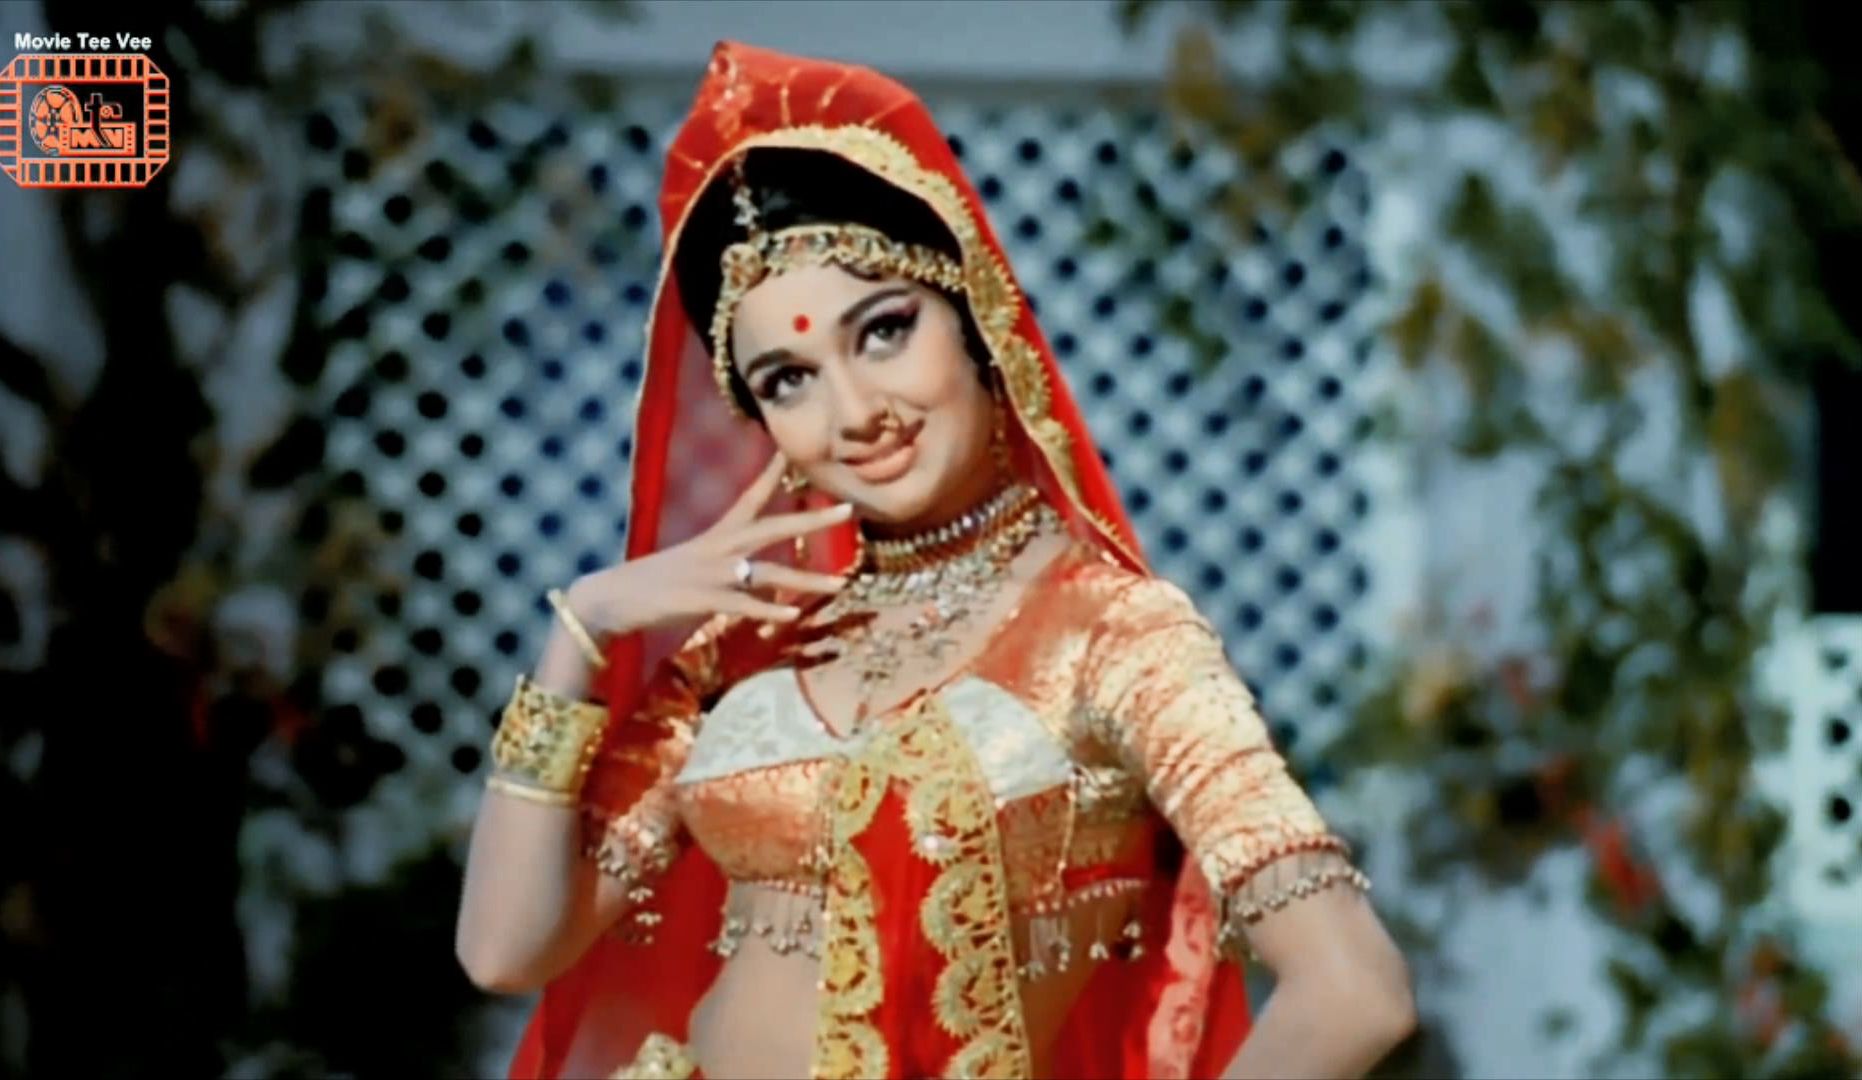 【天神的梦女粉】印度舞神Asha Parekh经典歌舞